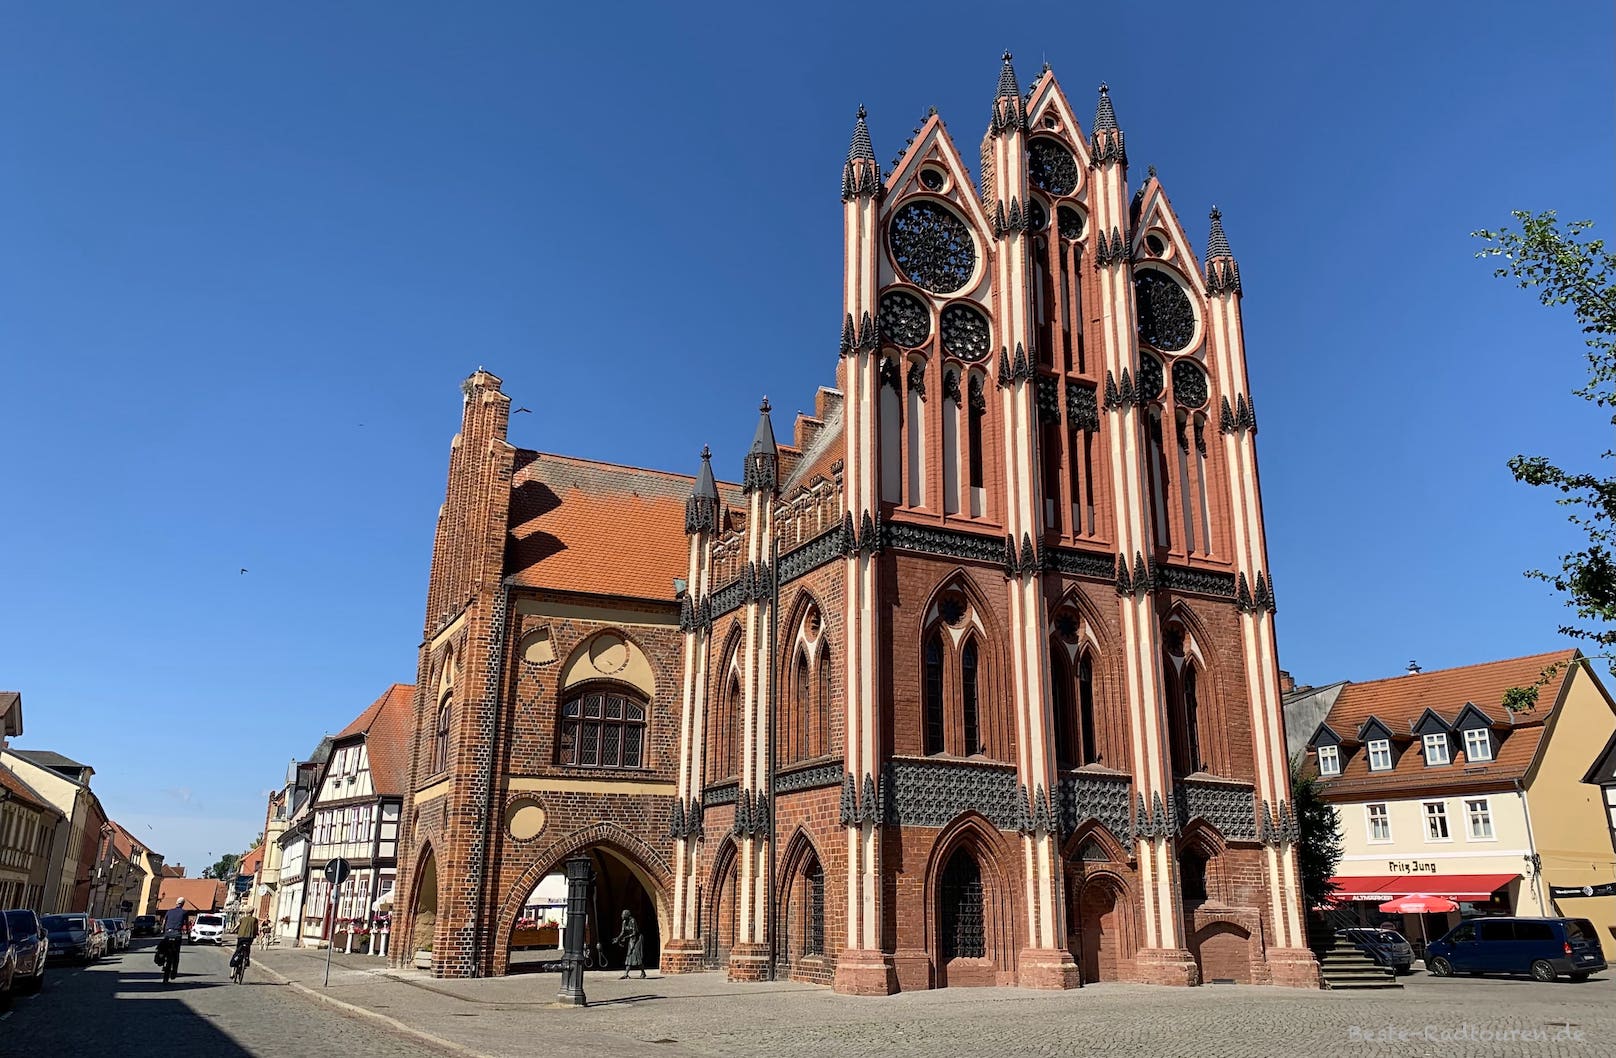 Historisches Rathaus und Museum auf dem Marktplatz von Tangermünde, Foto von der Kirchstraße aus